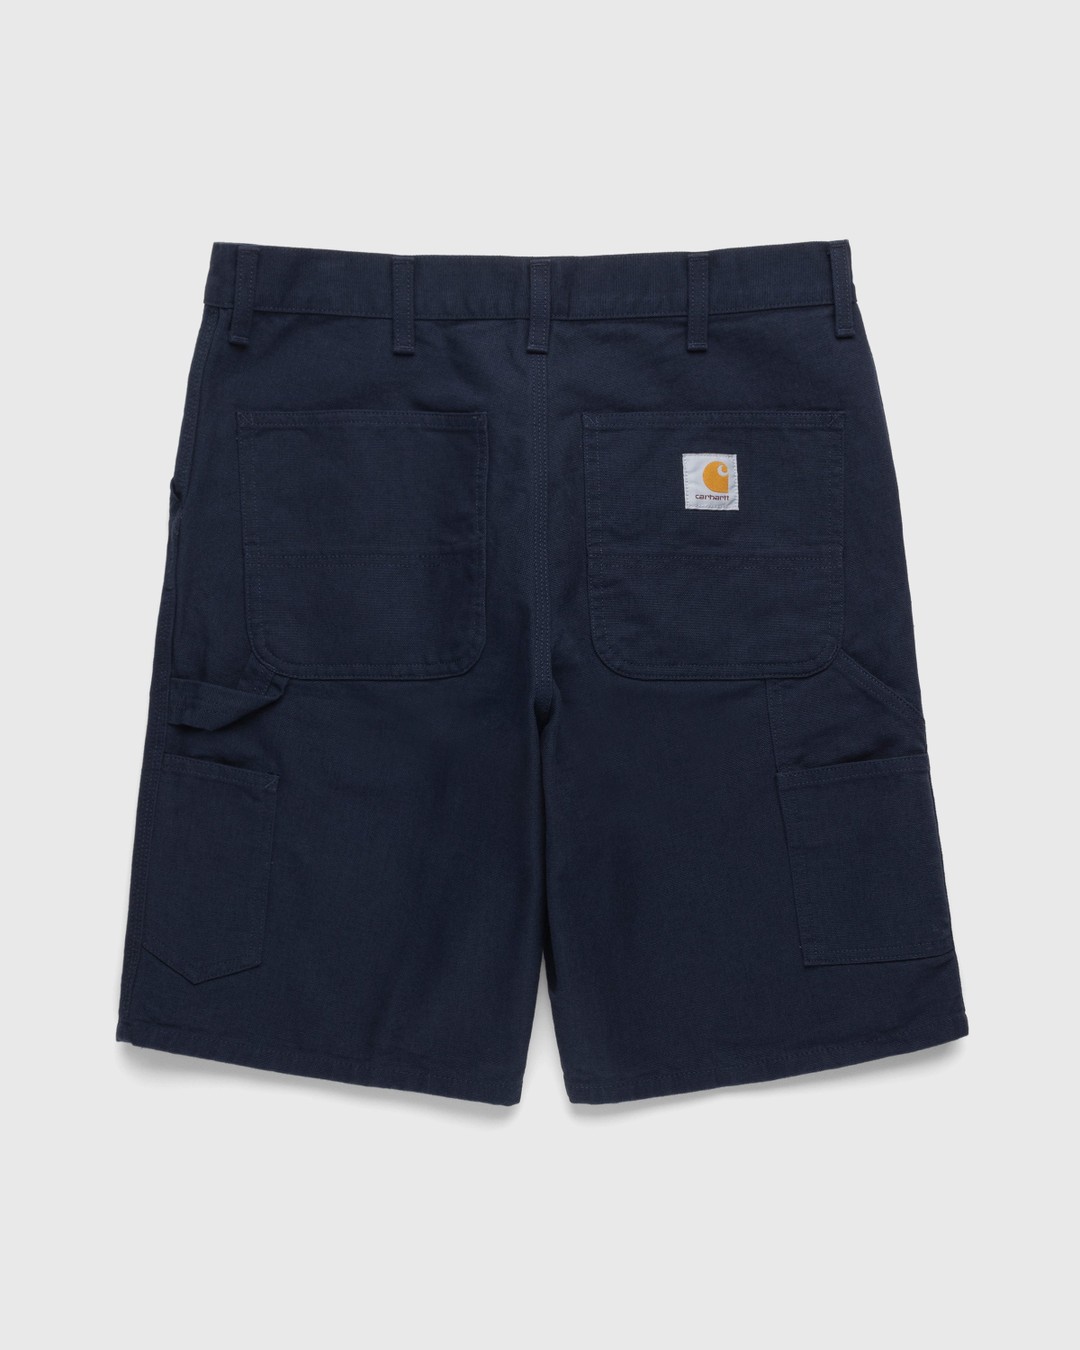 Carhartt WIP – Single Knee Short Dark Navy - Shorts - Black - Image 2